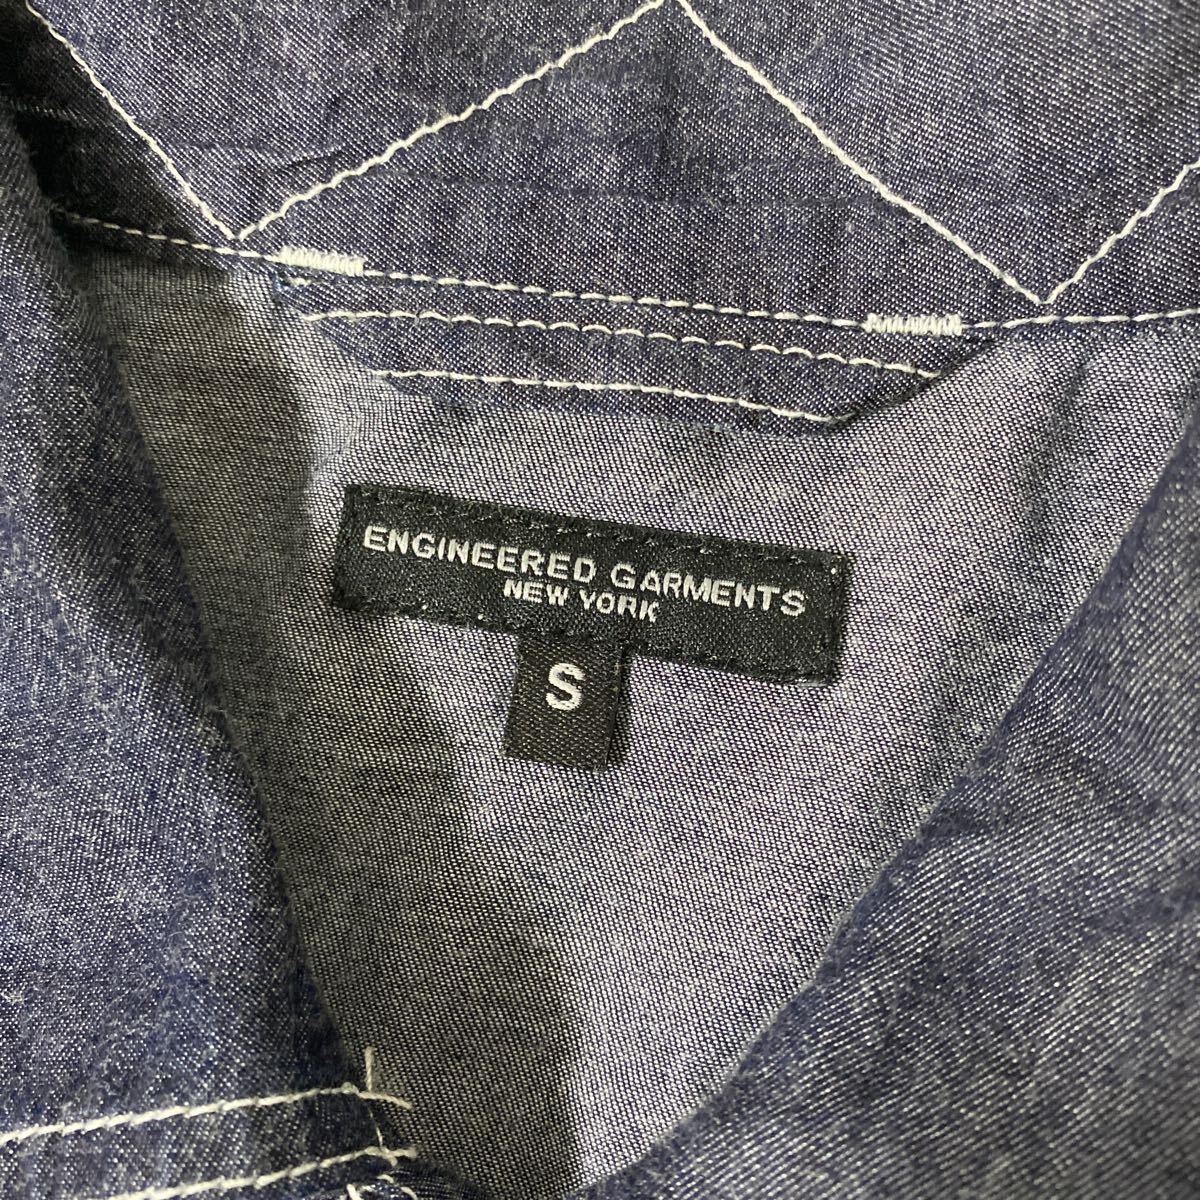  прекрасный товар Engineered Garments army denim shirt S engineered garments Army рубашка work shirt жакет 